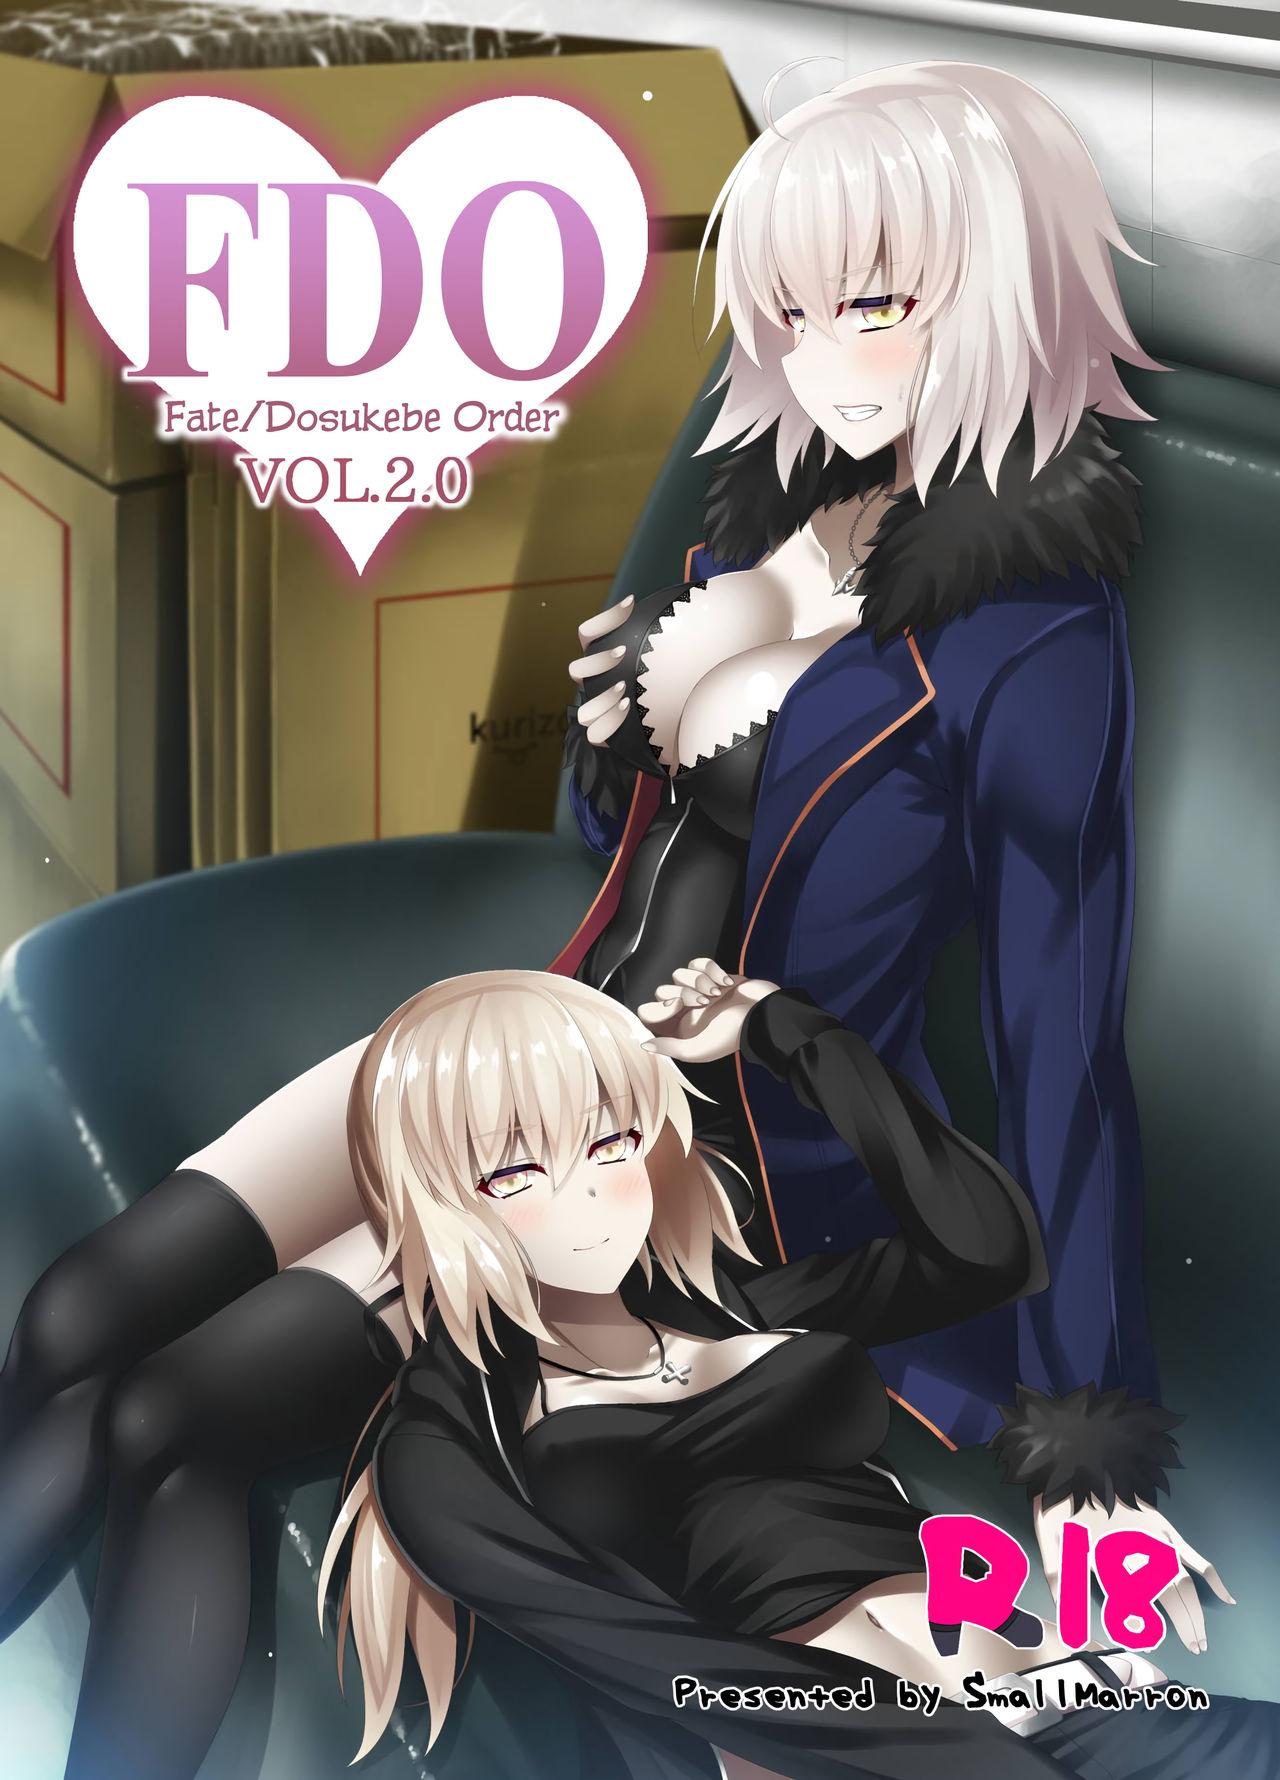 Delicia FDO Fate/Dosukebe Order VOL.2.0 - Fate grand order Hottie - Page 1